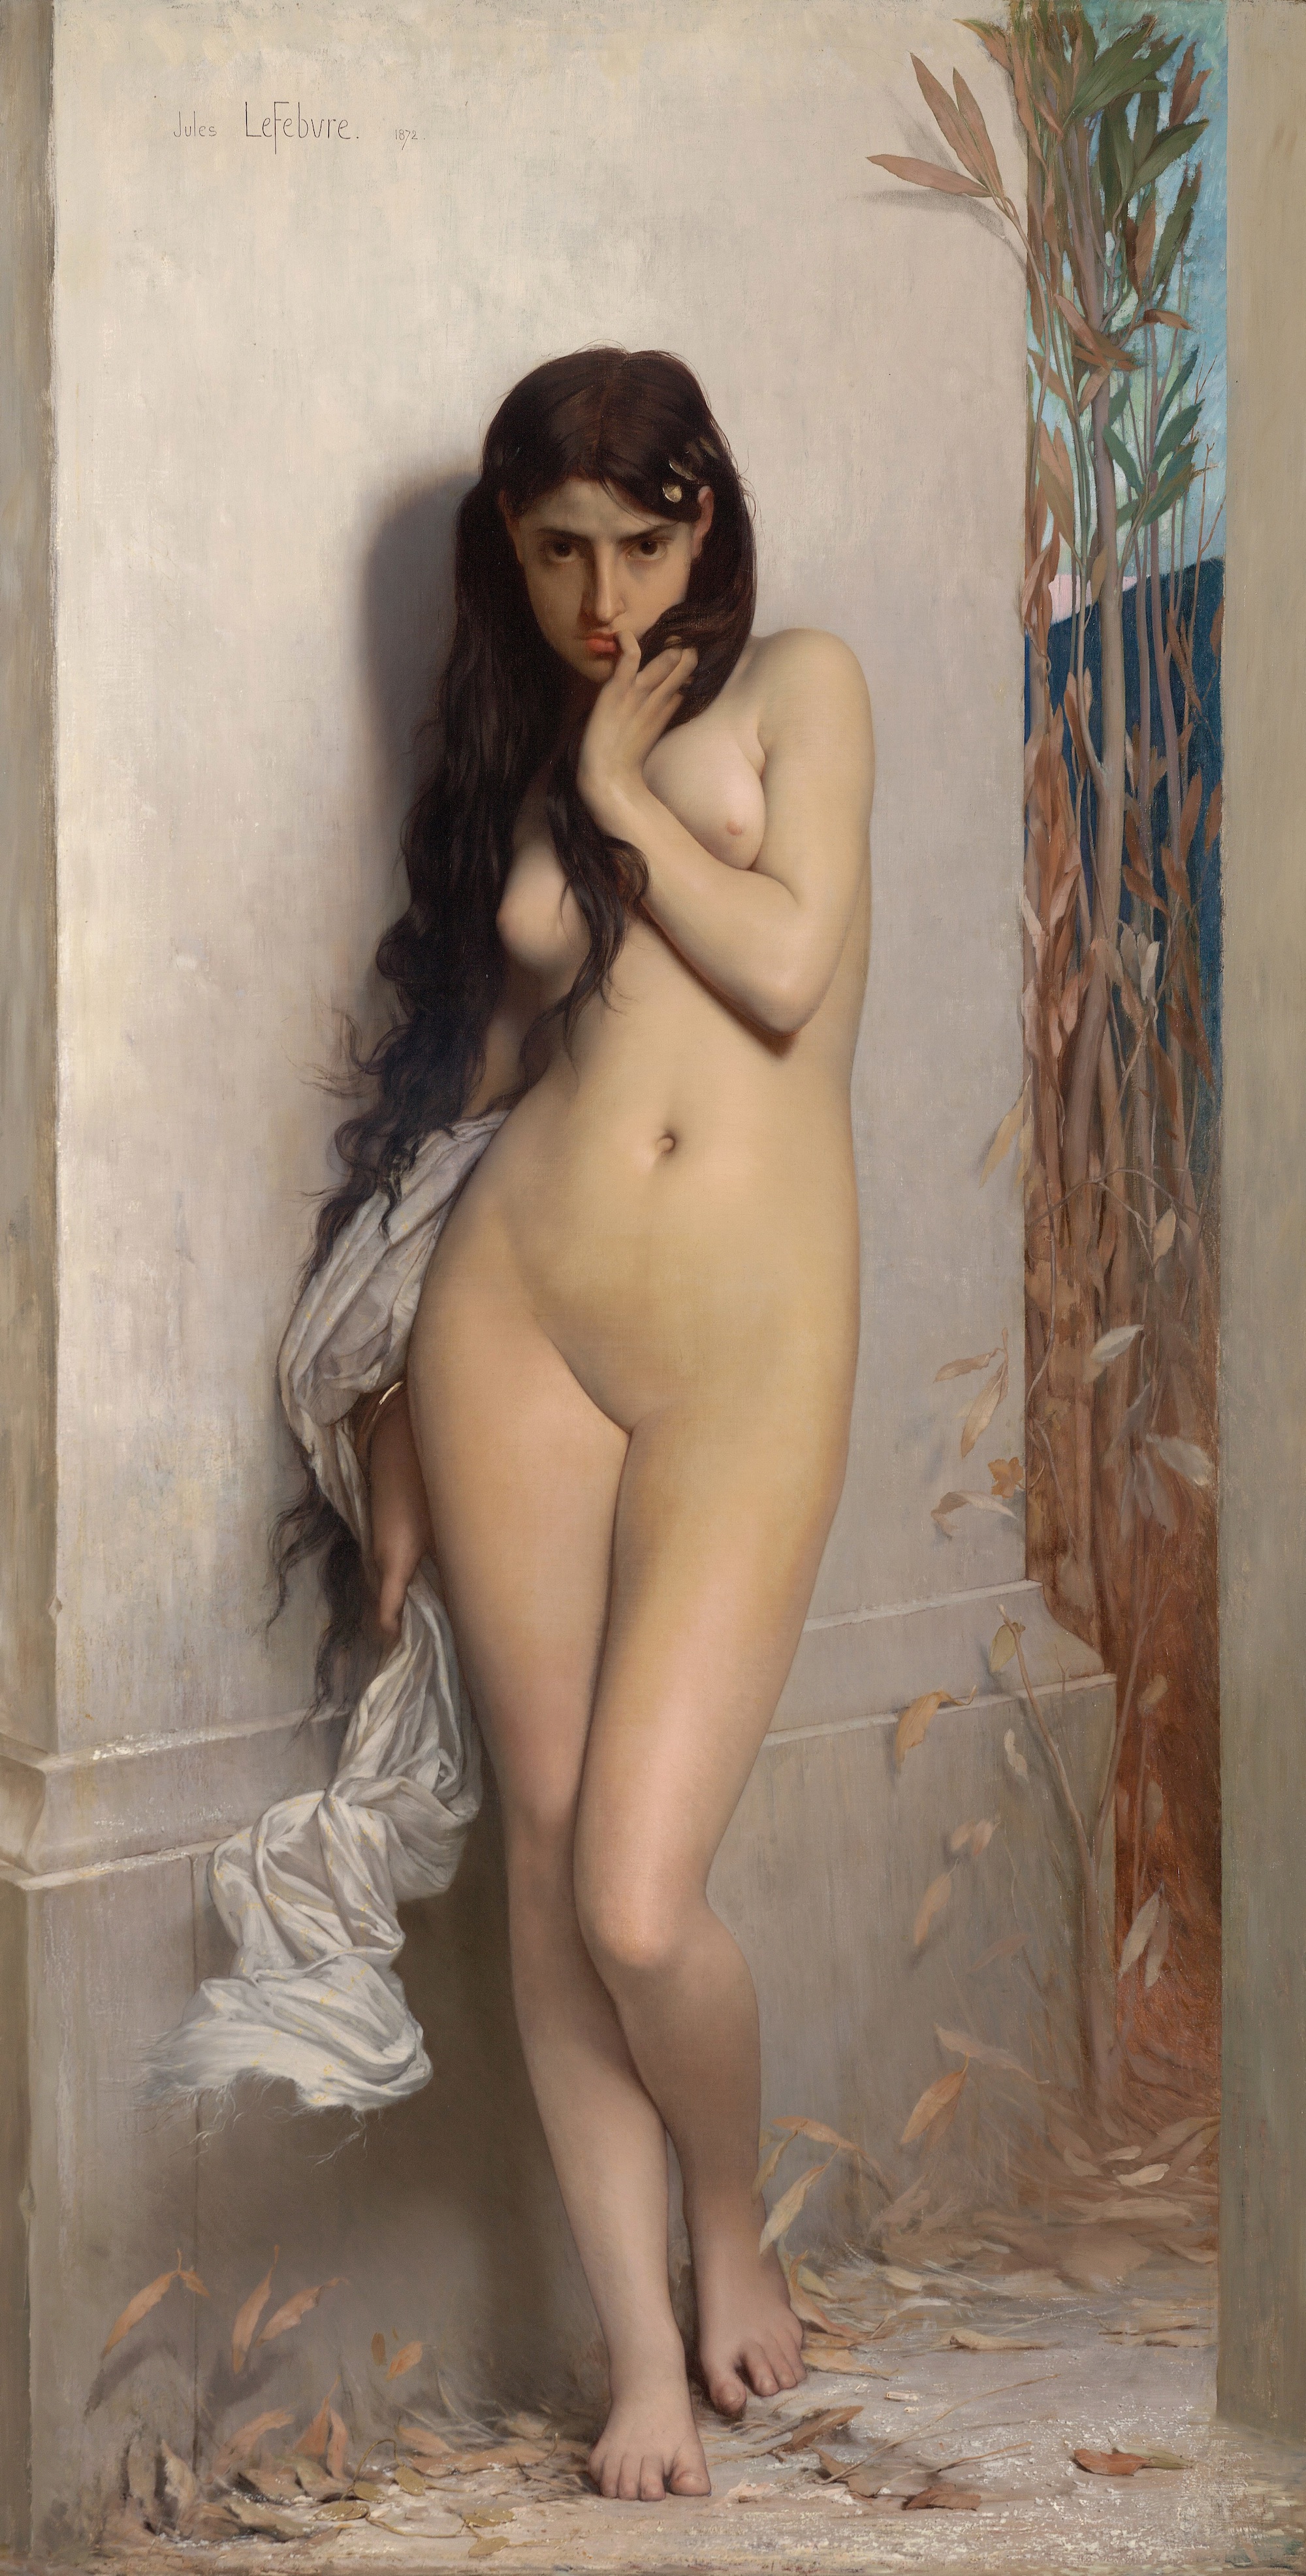 Konik polny by Jules Lefebvre - 1872 - 123,8 x 186,7 cm 